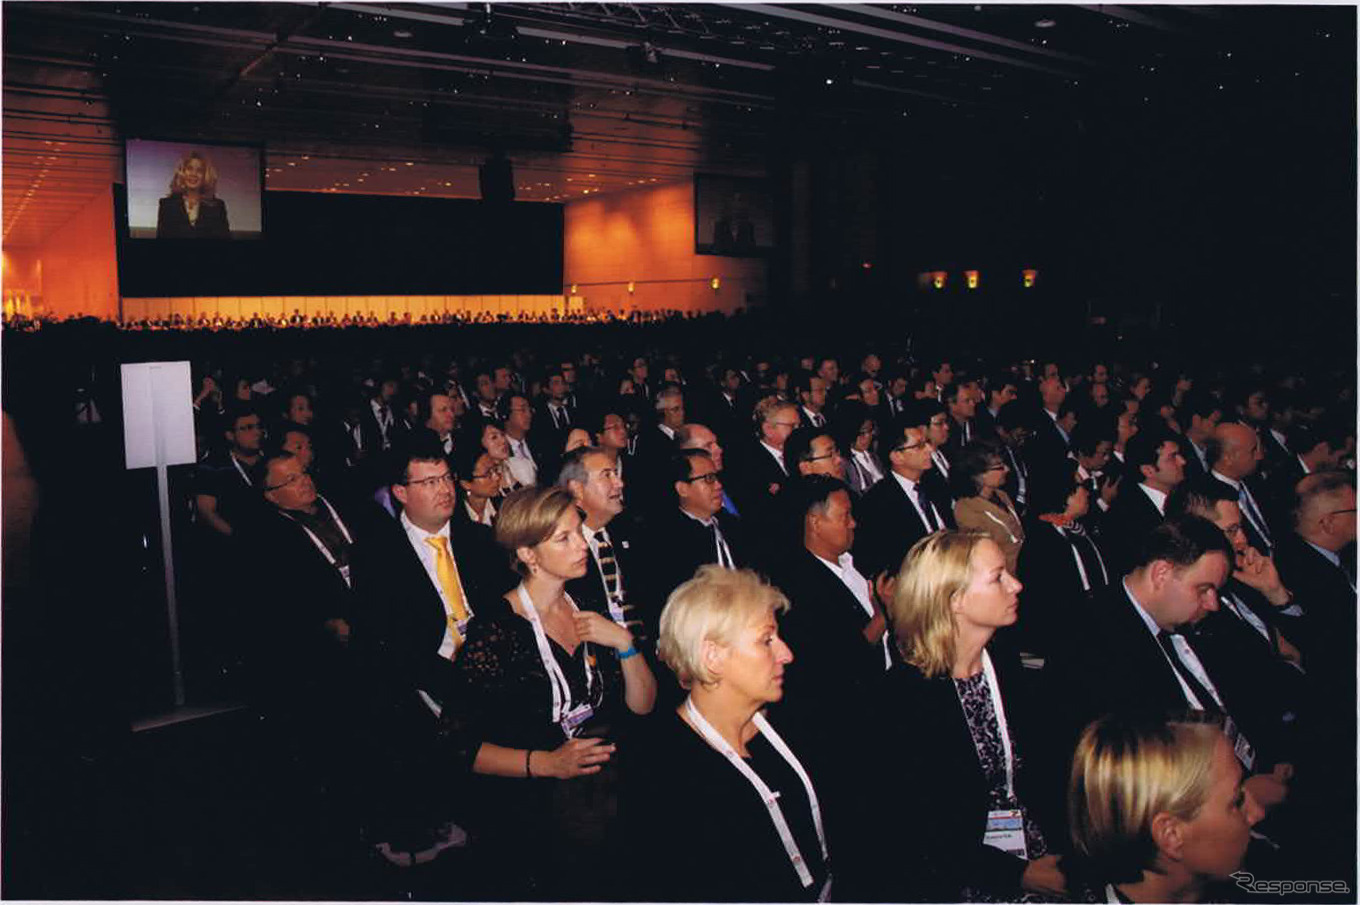 ITS世界会議ウィーン2012の閉会式